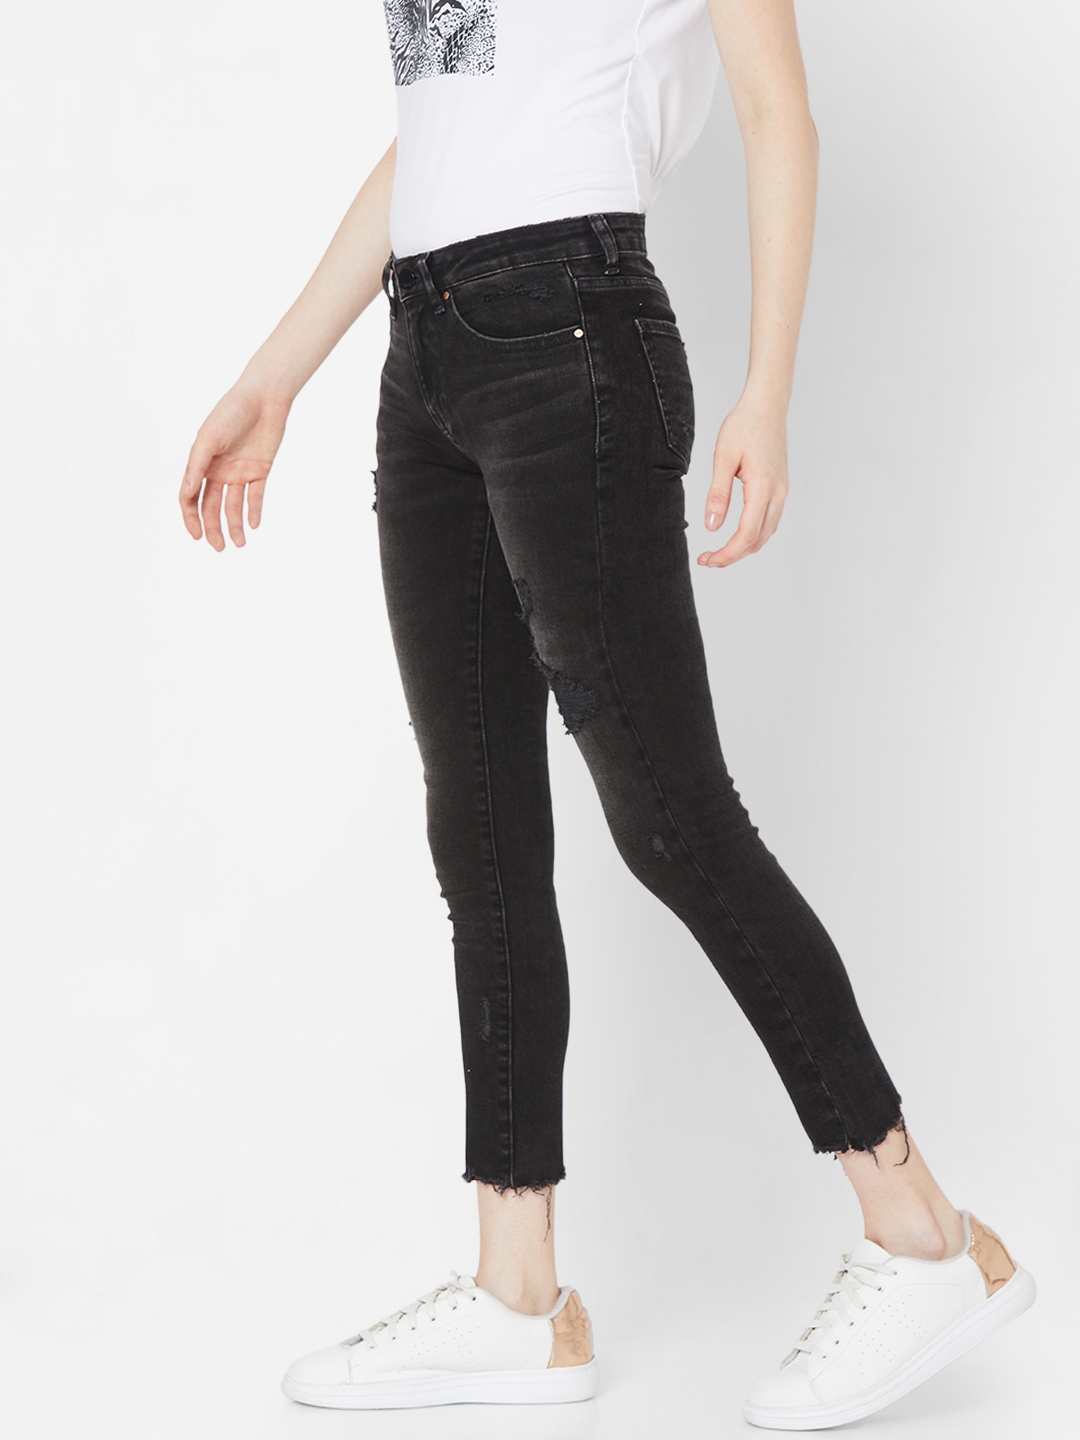 spykar | Women's Black Lycra Solid Ripped Jeans 1